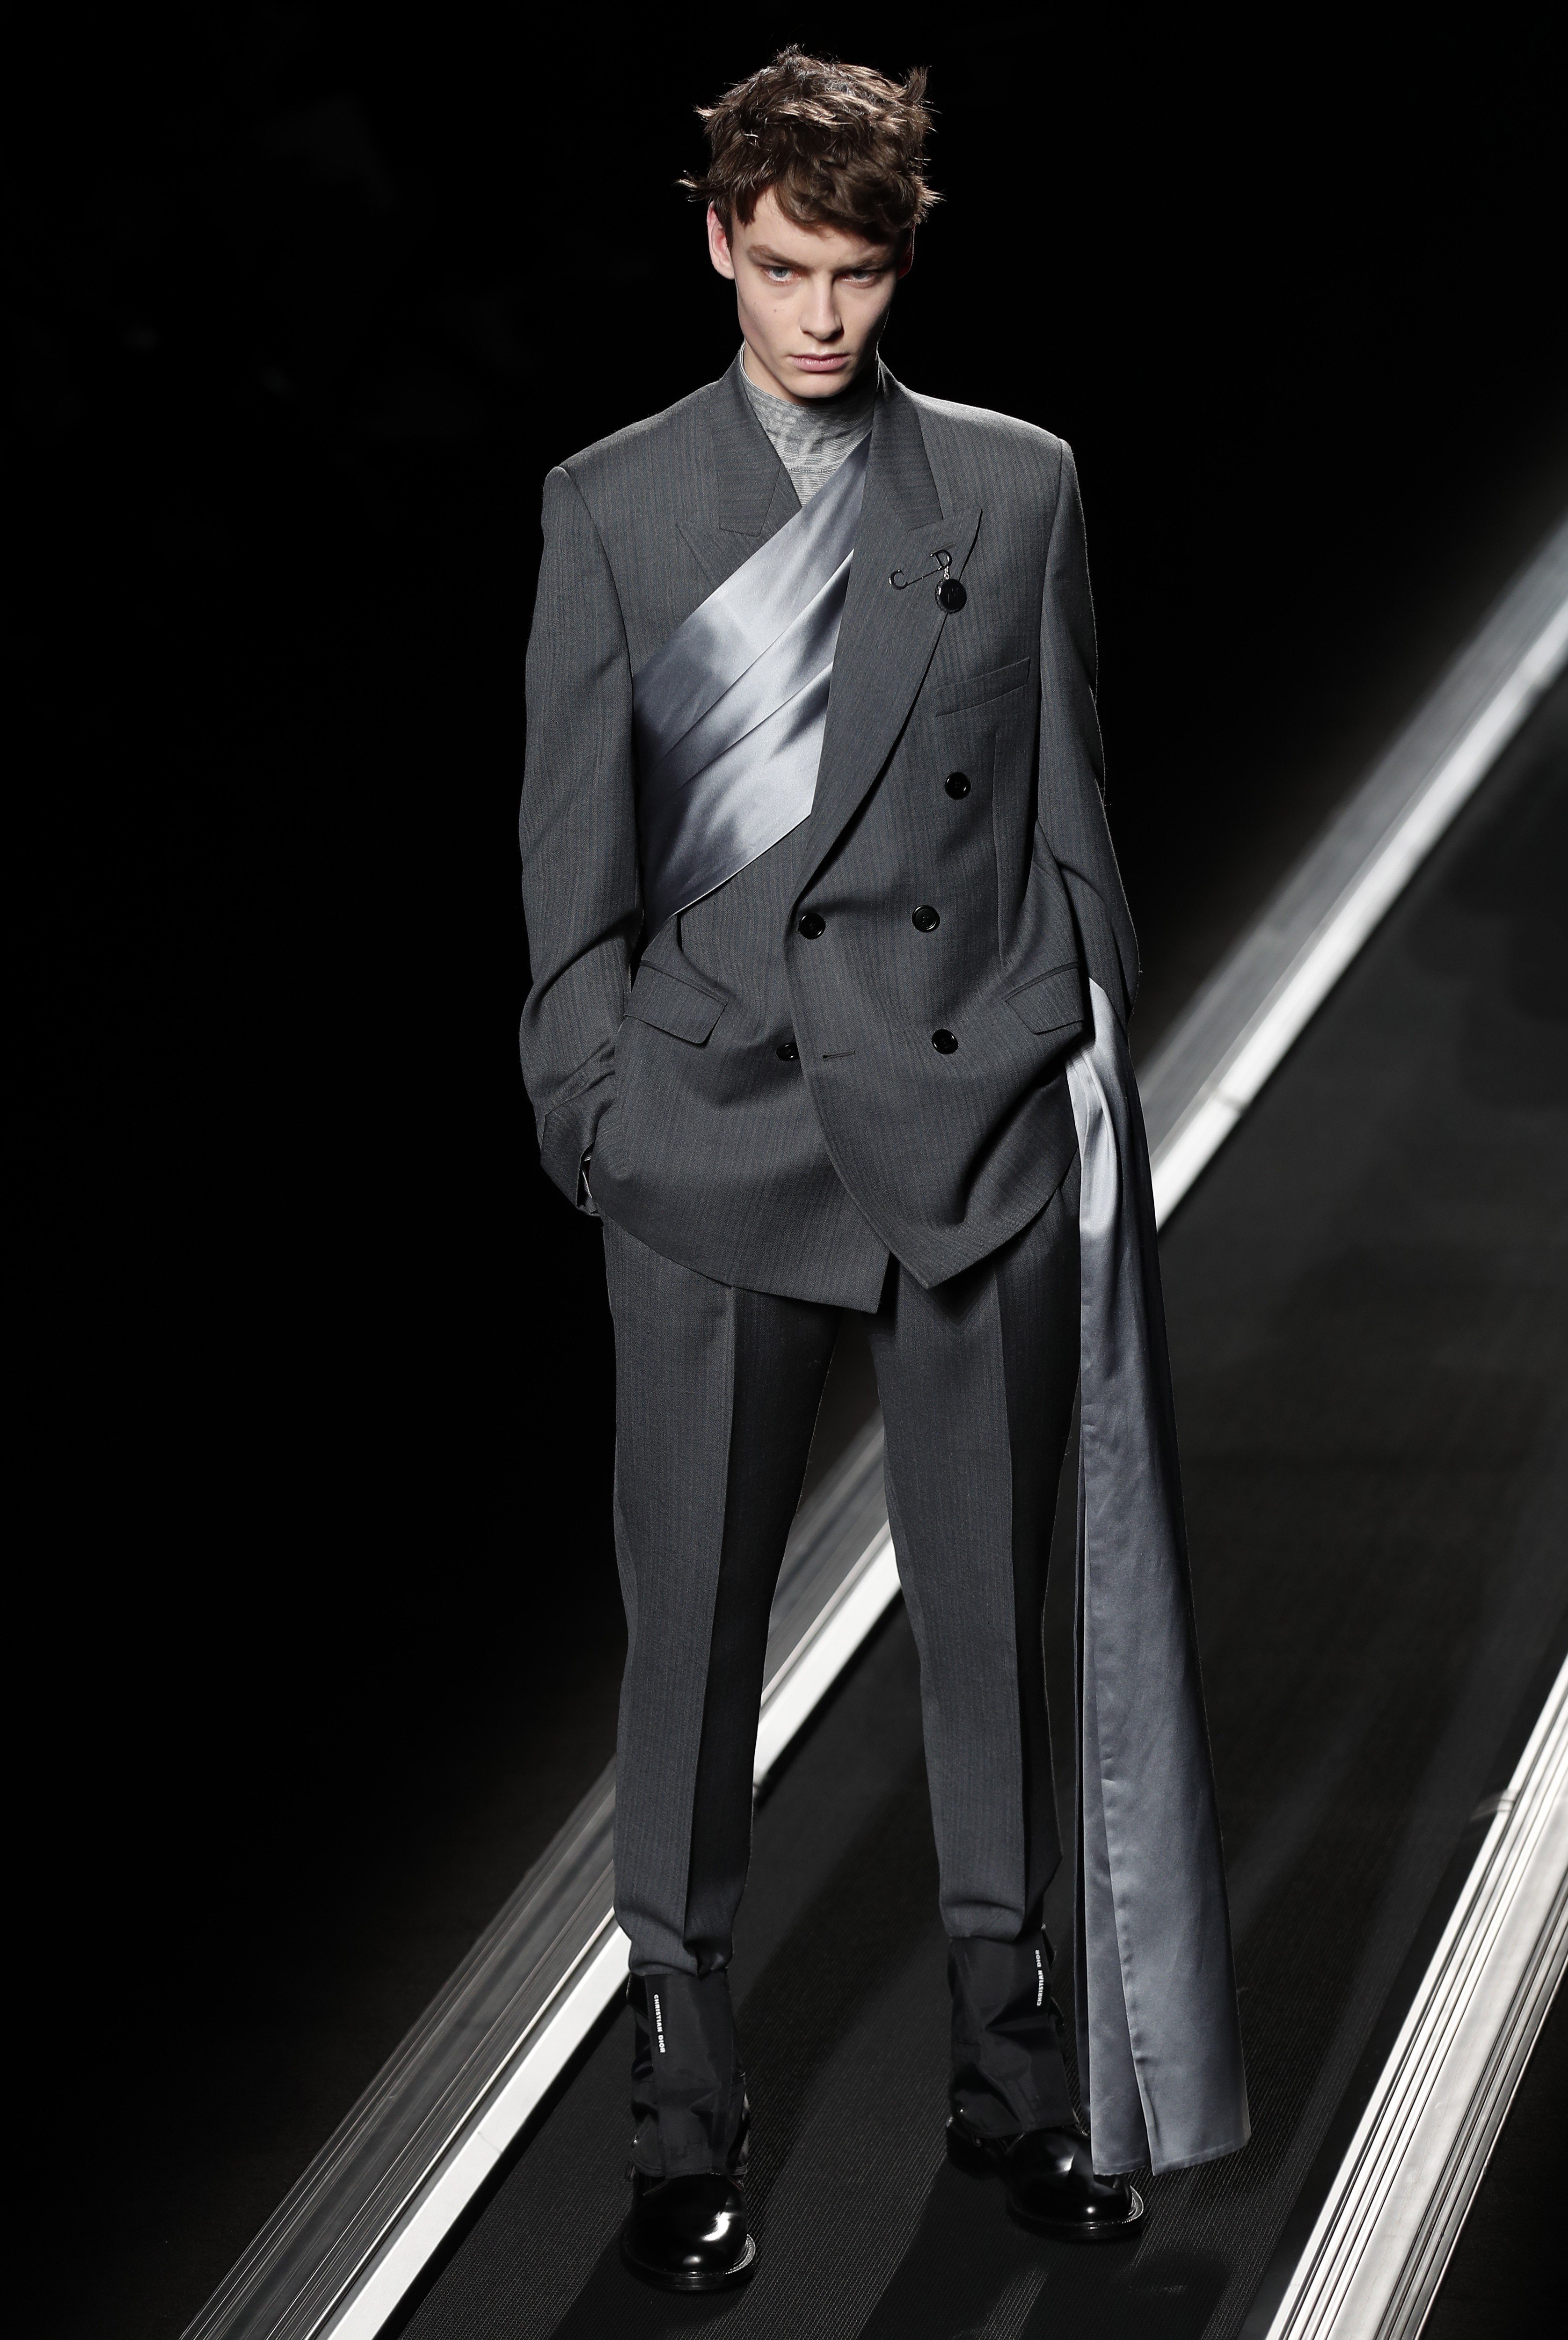 Paris Fashion Week: Dior’s statuesque models cut a dash as well ...